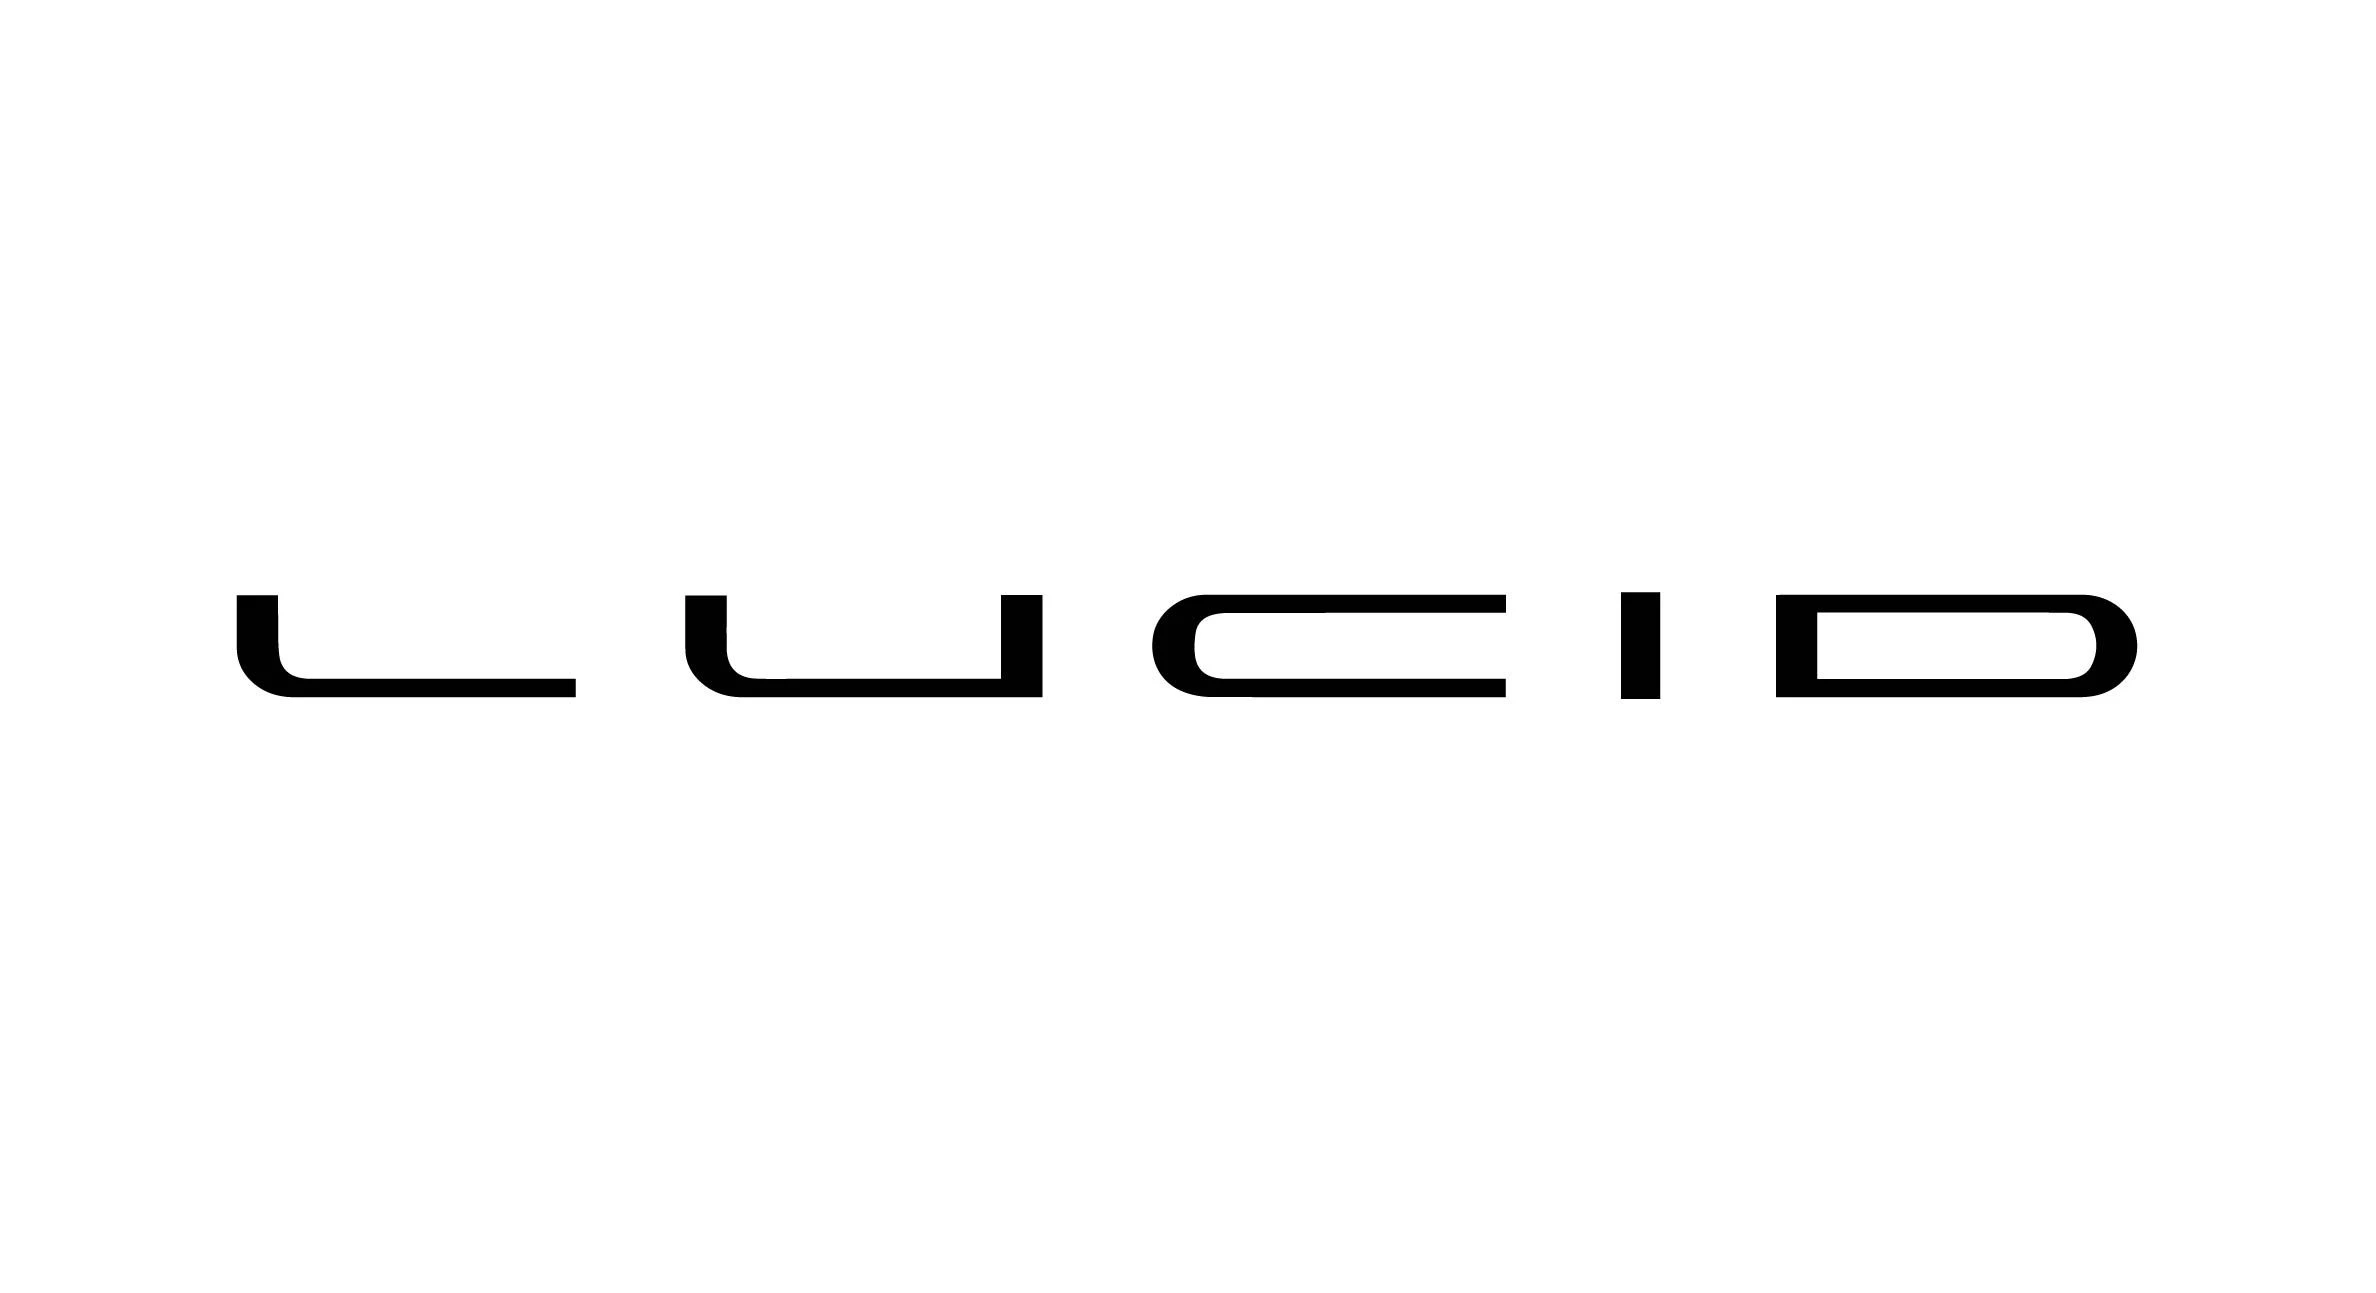 Lucid car brand logo